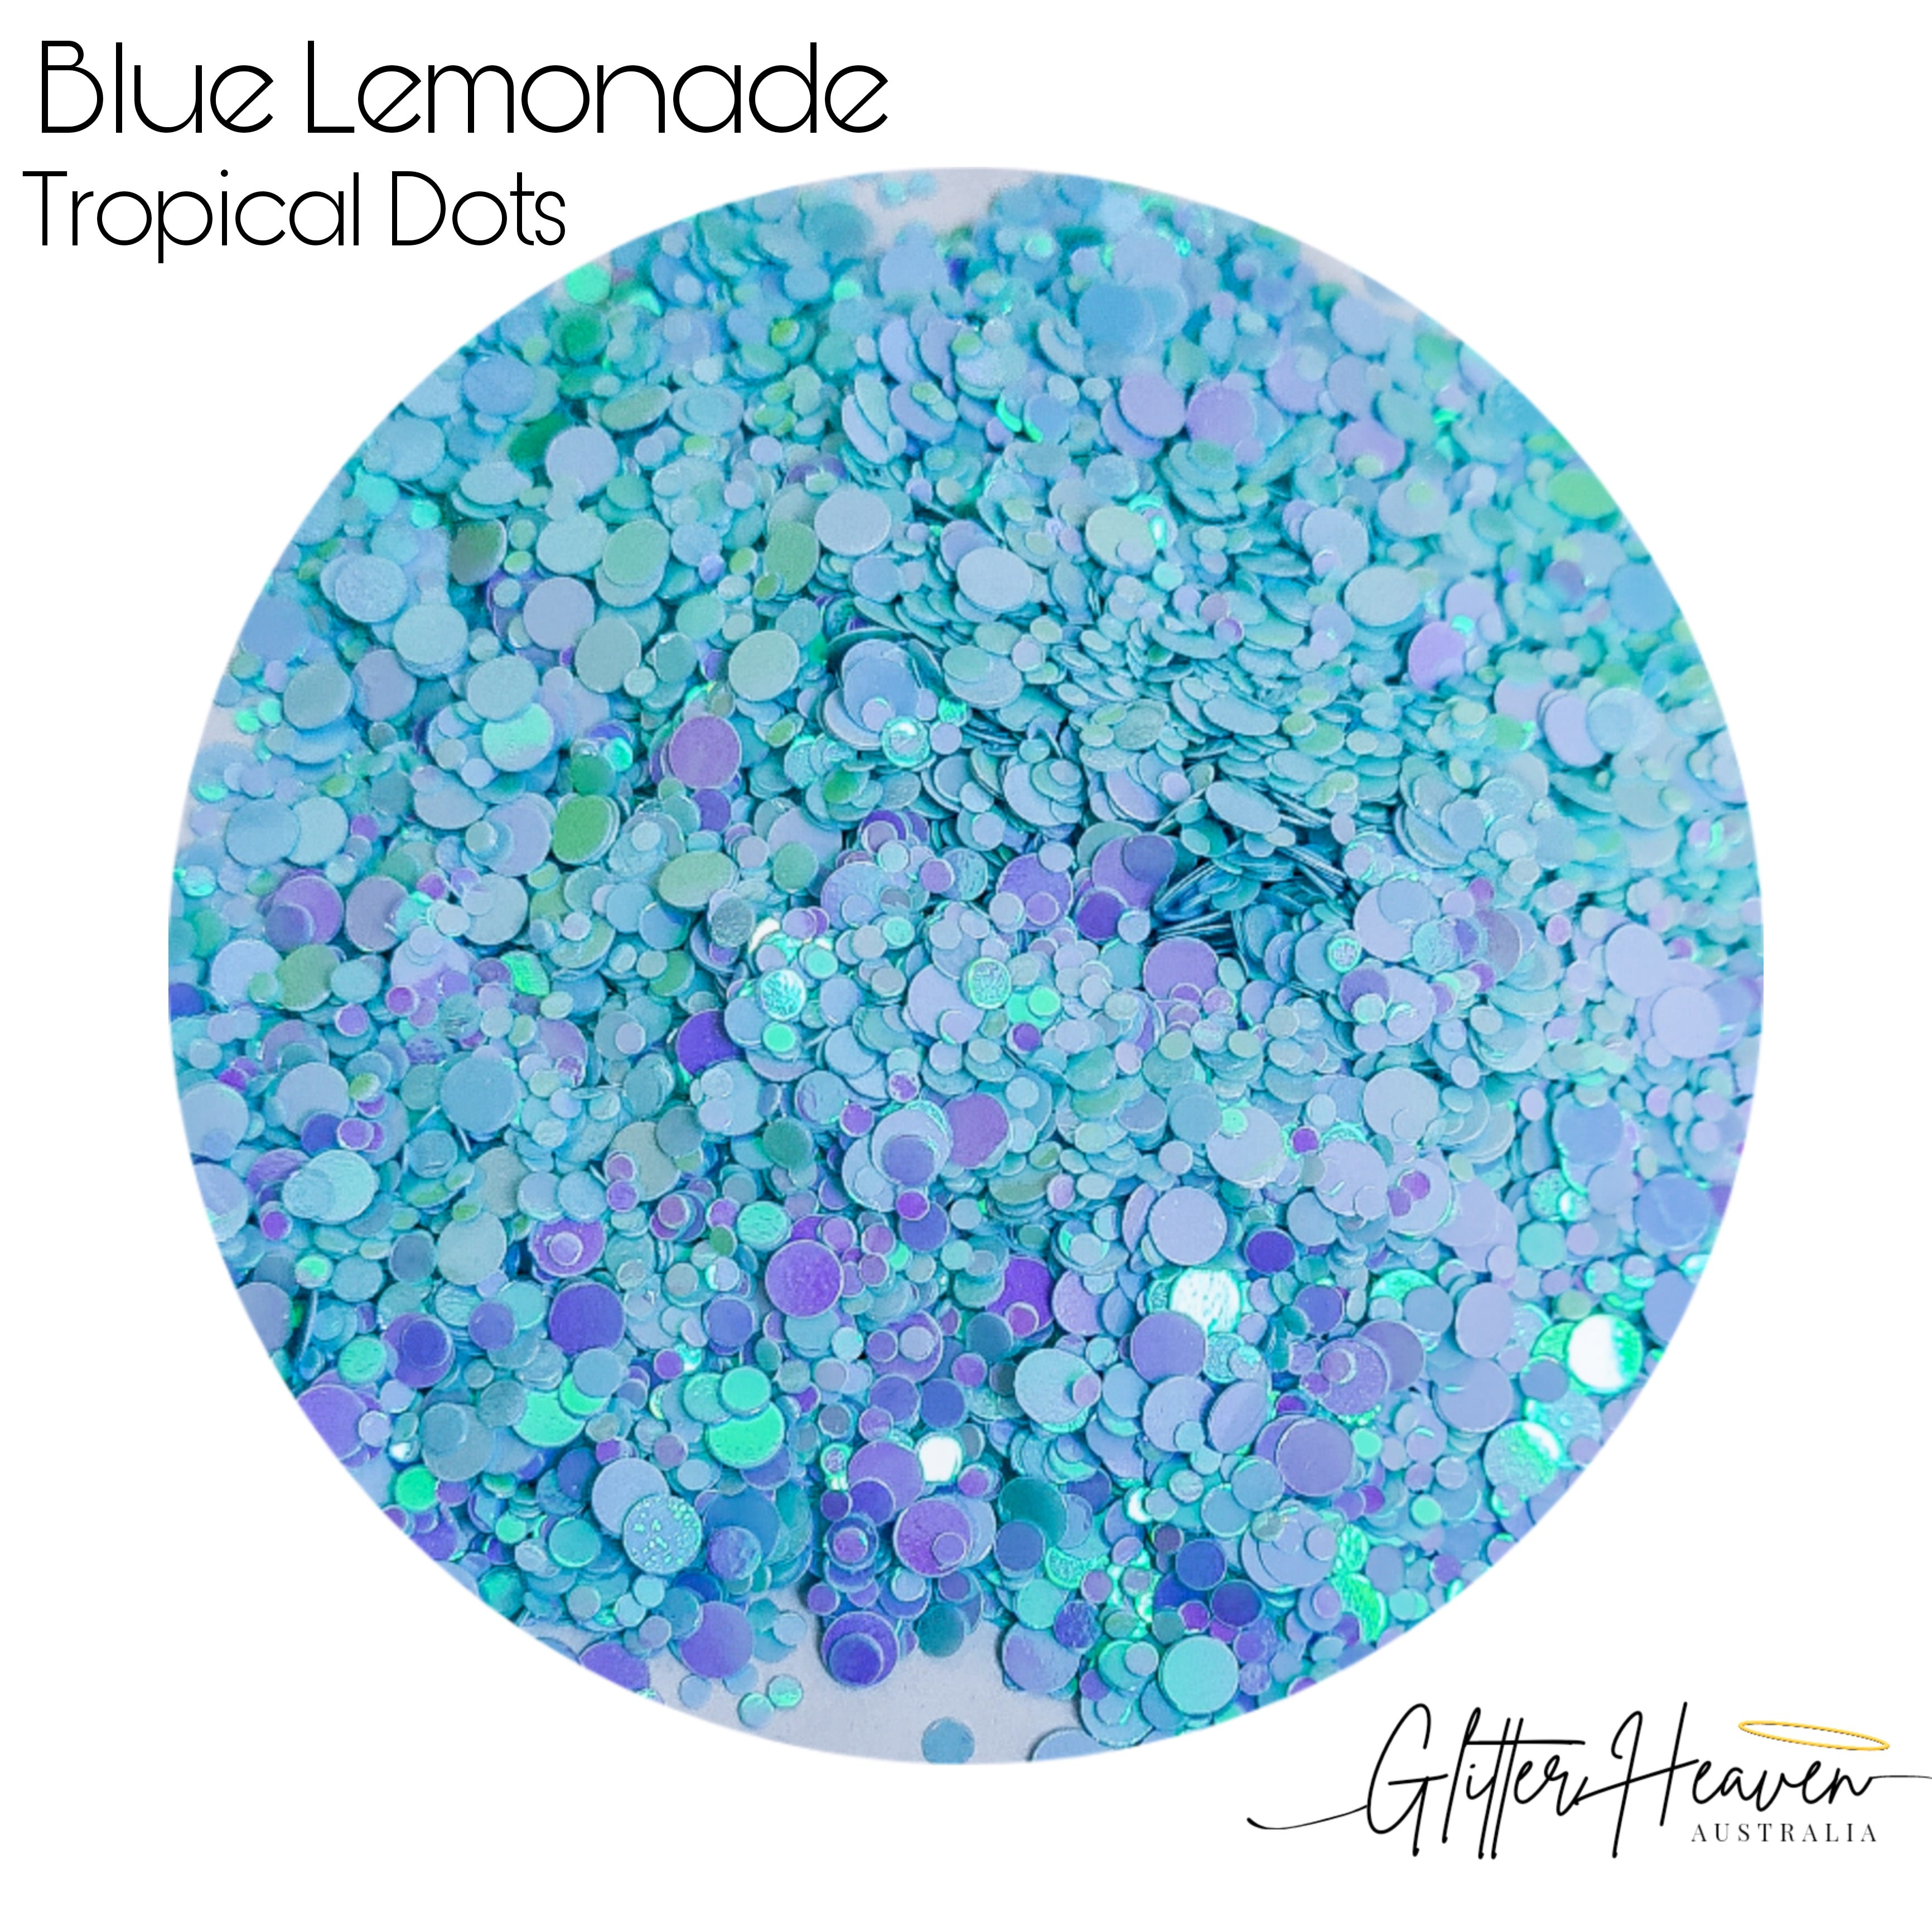 Blue Lemonade Tropical Dots